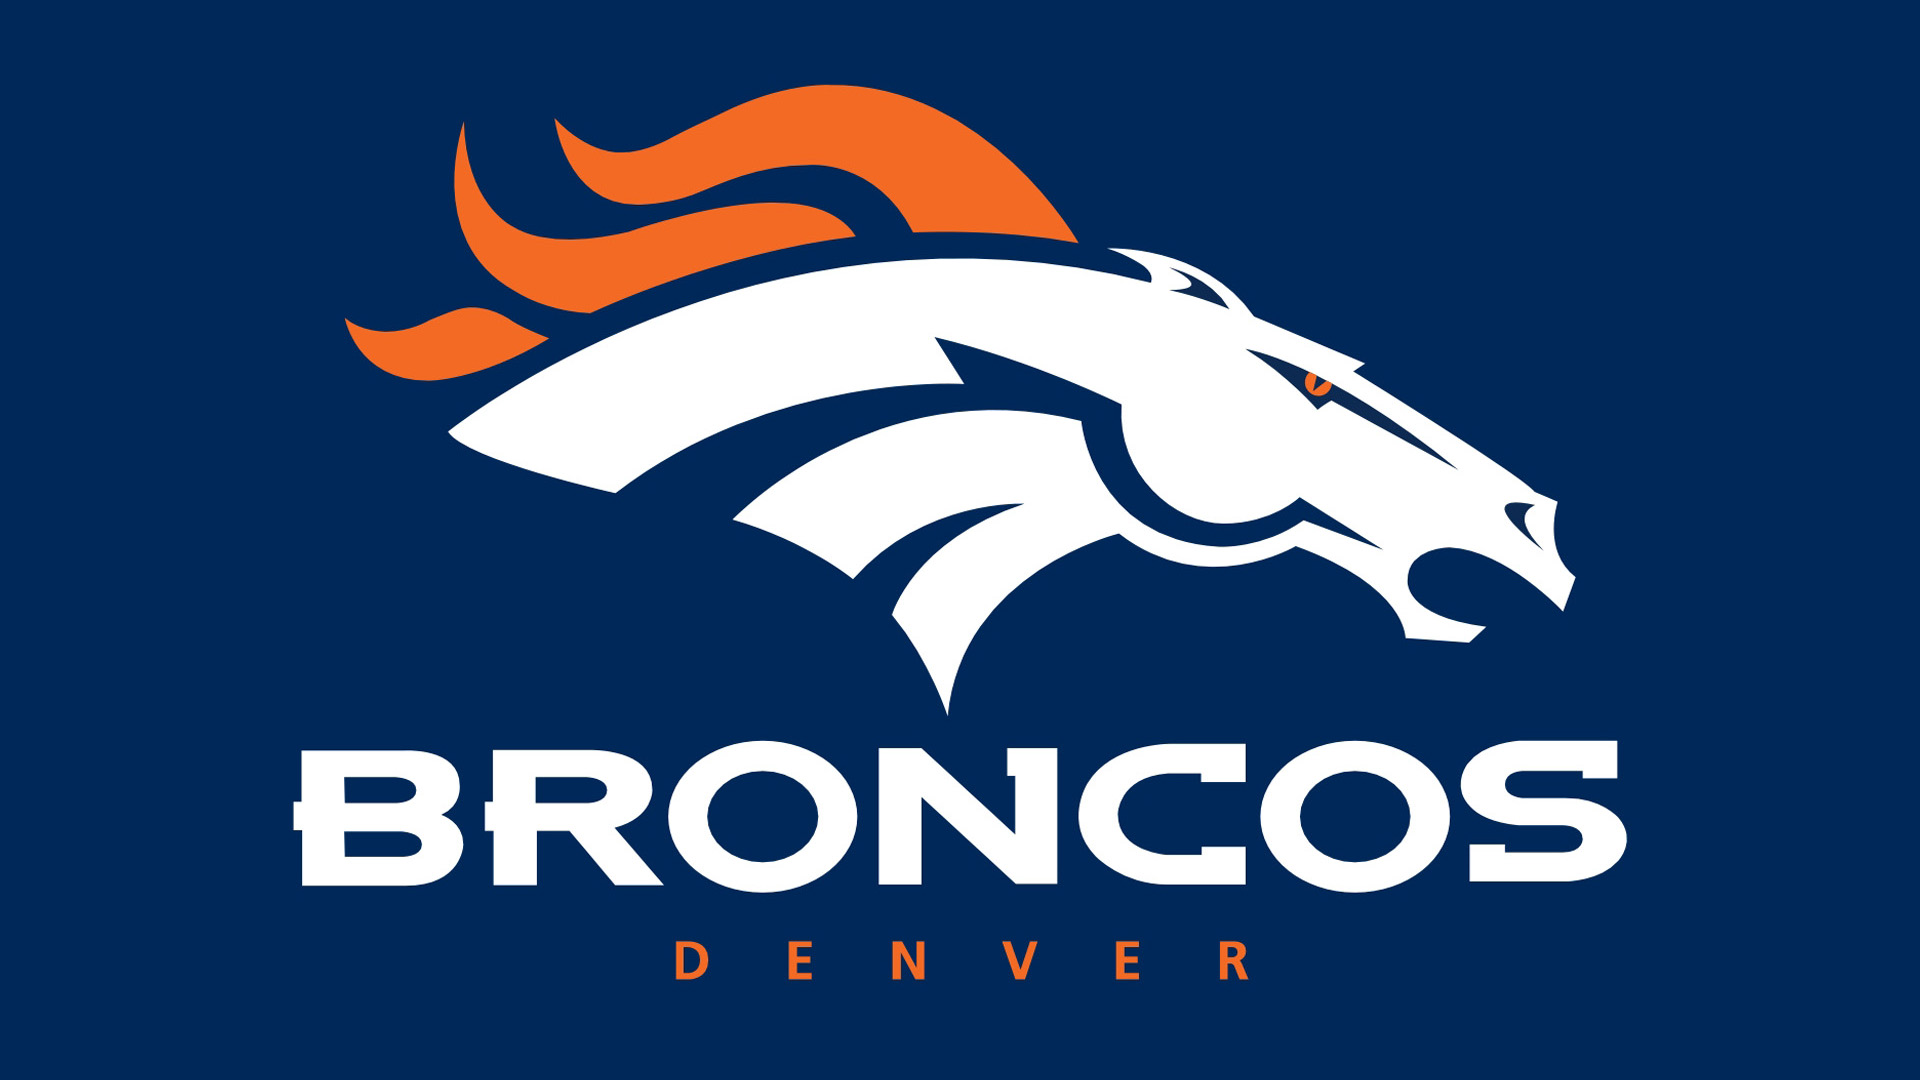 Denver Broncos HD Background Wallpaper